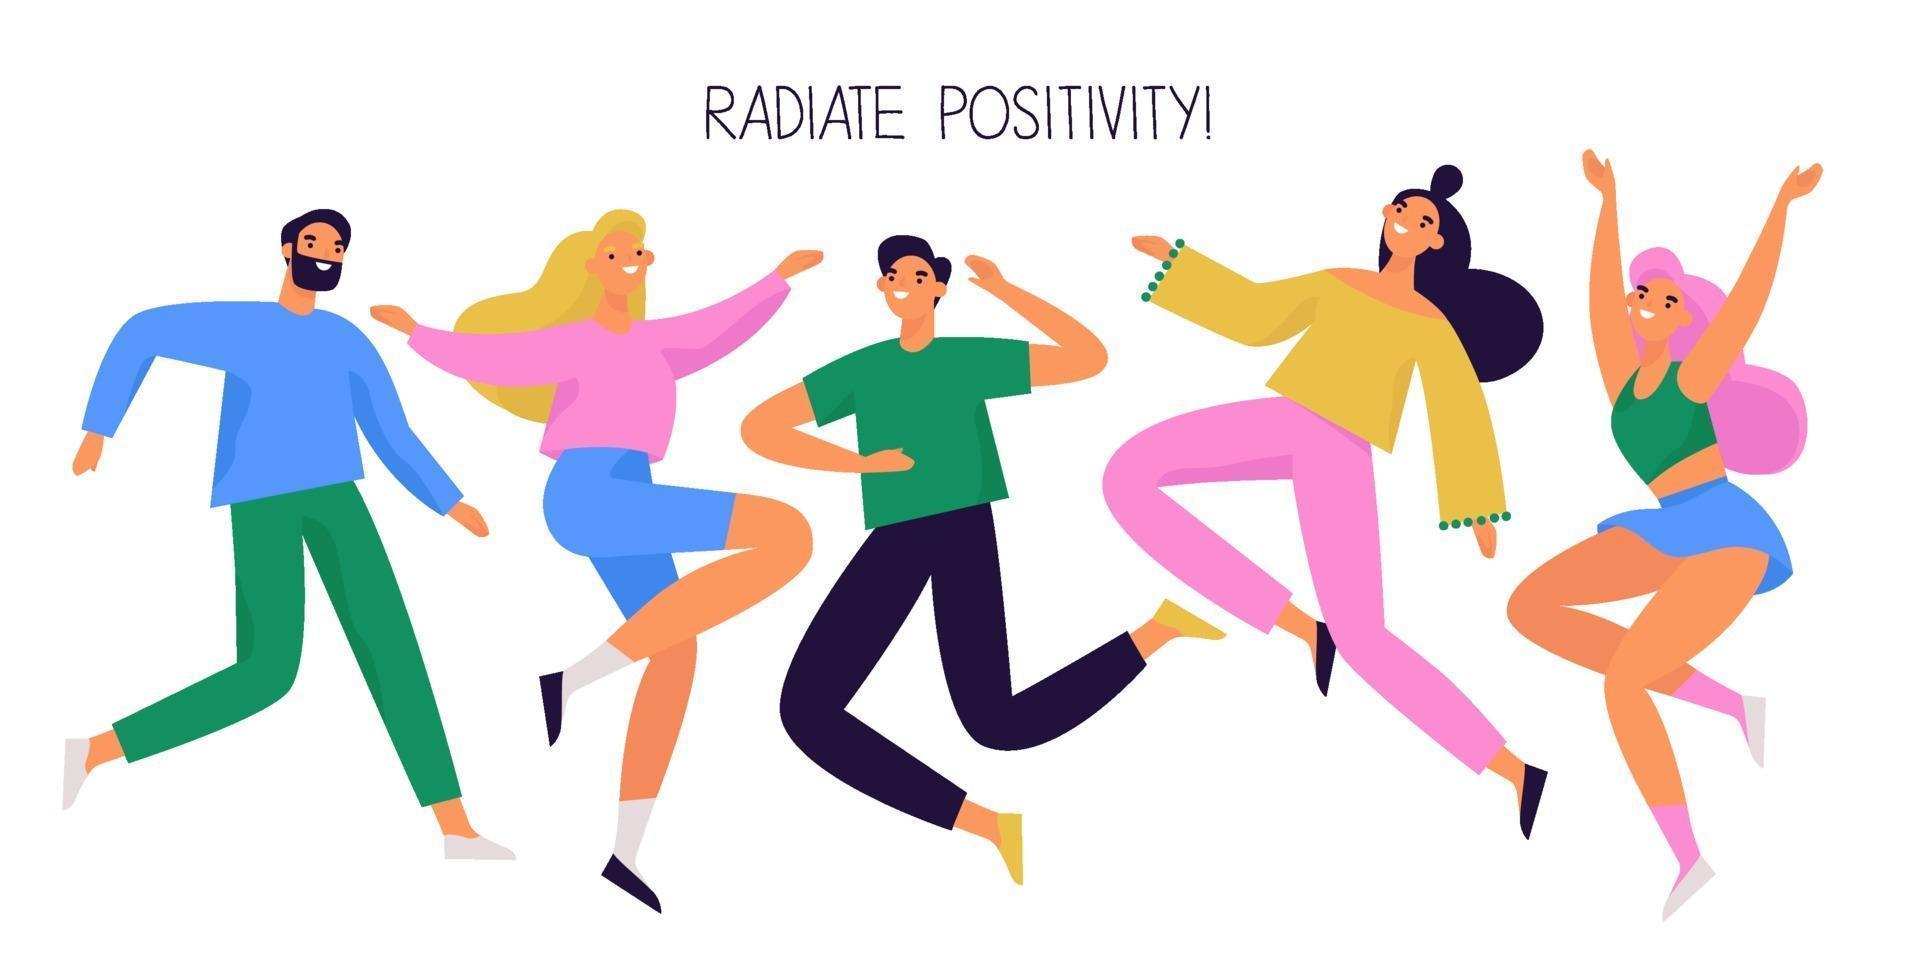 gruppo di persone felici che saltano e ballano. personaggi diversi gioiosi e positivi. illustrazione vettoriale colorato.